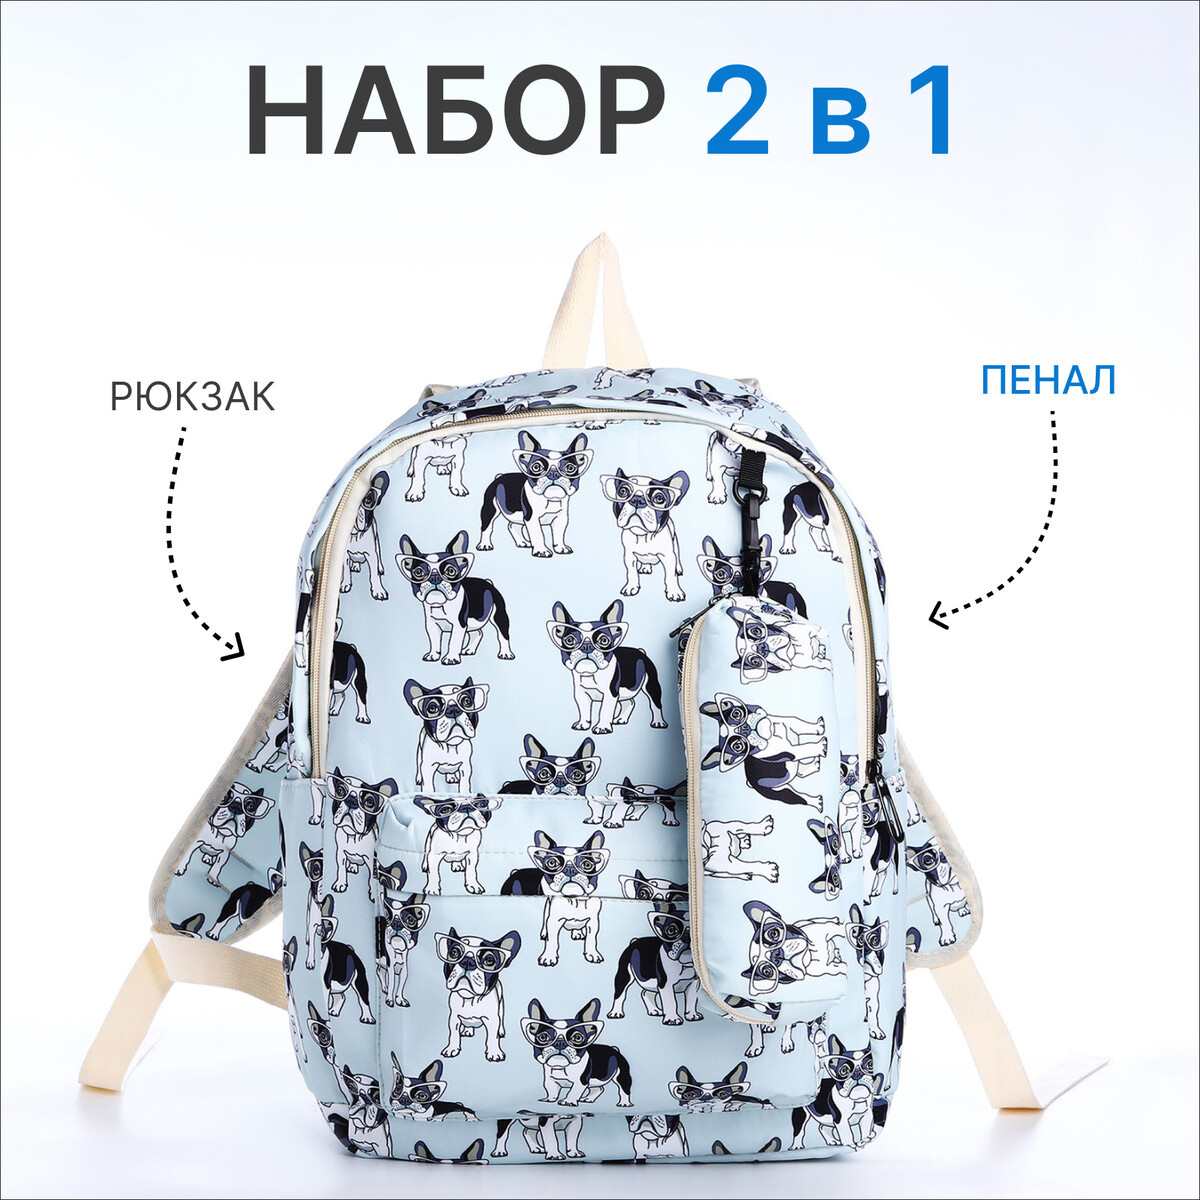 Рюкзак школьный из текстиля на молнии, 3 кармана, пенал, цвет голубой